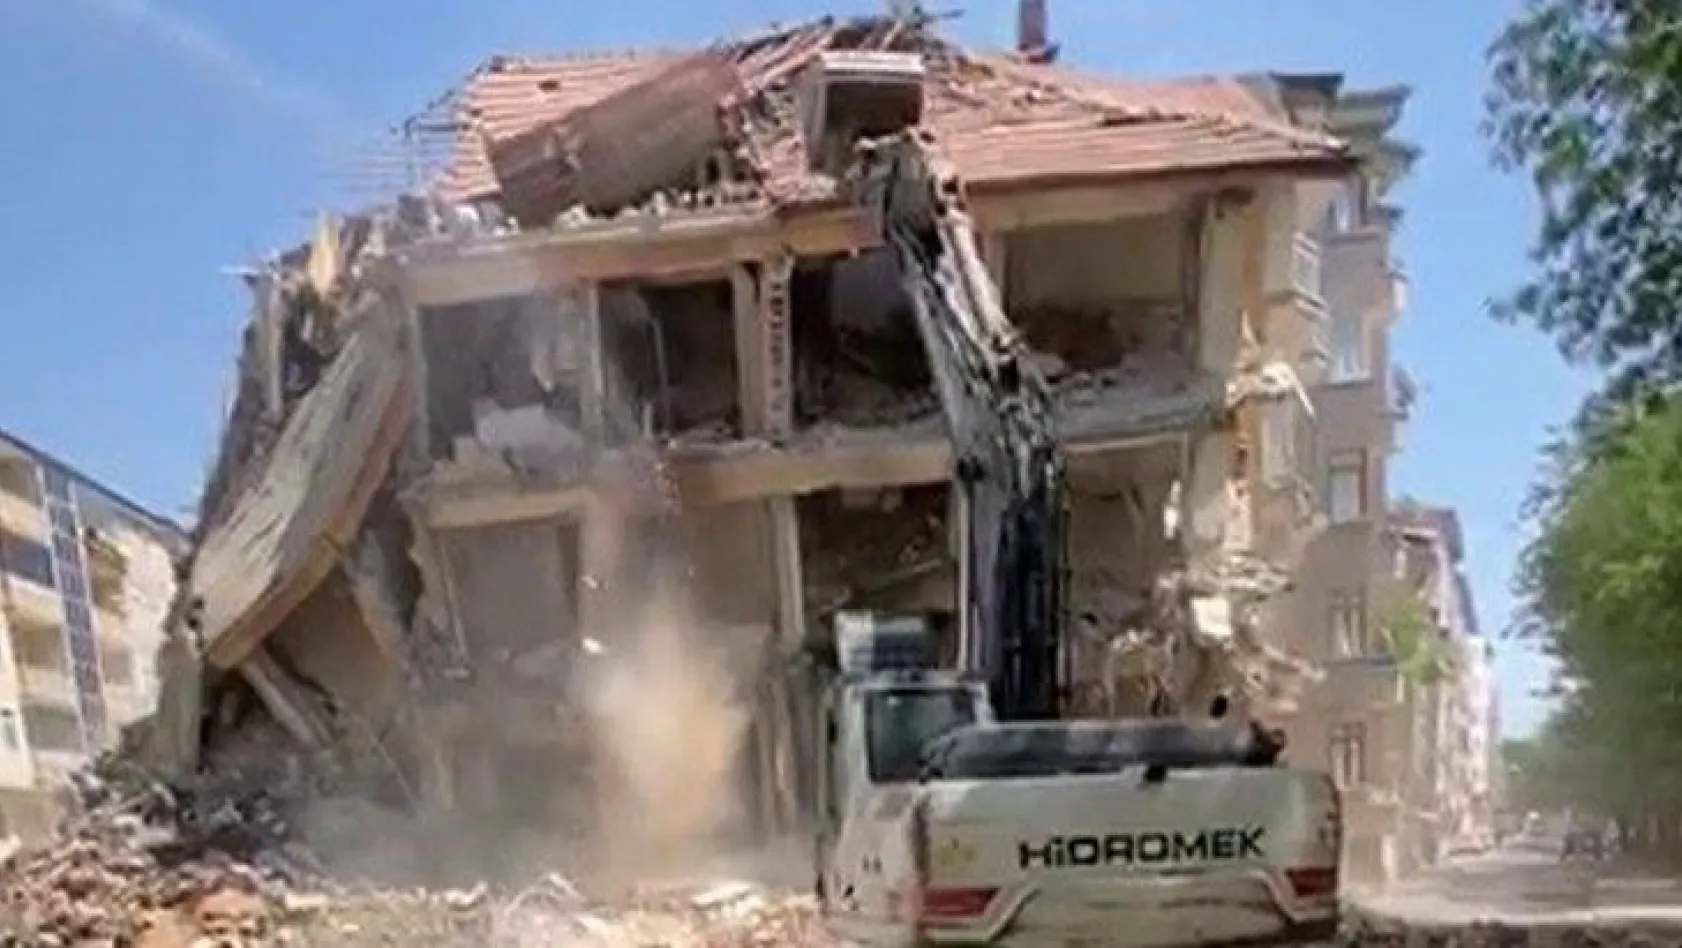 Elazığ'da 'korna' sesi ile 4 katlı bina yıkıldı